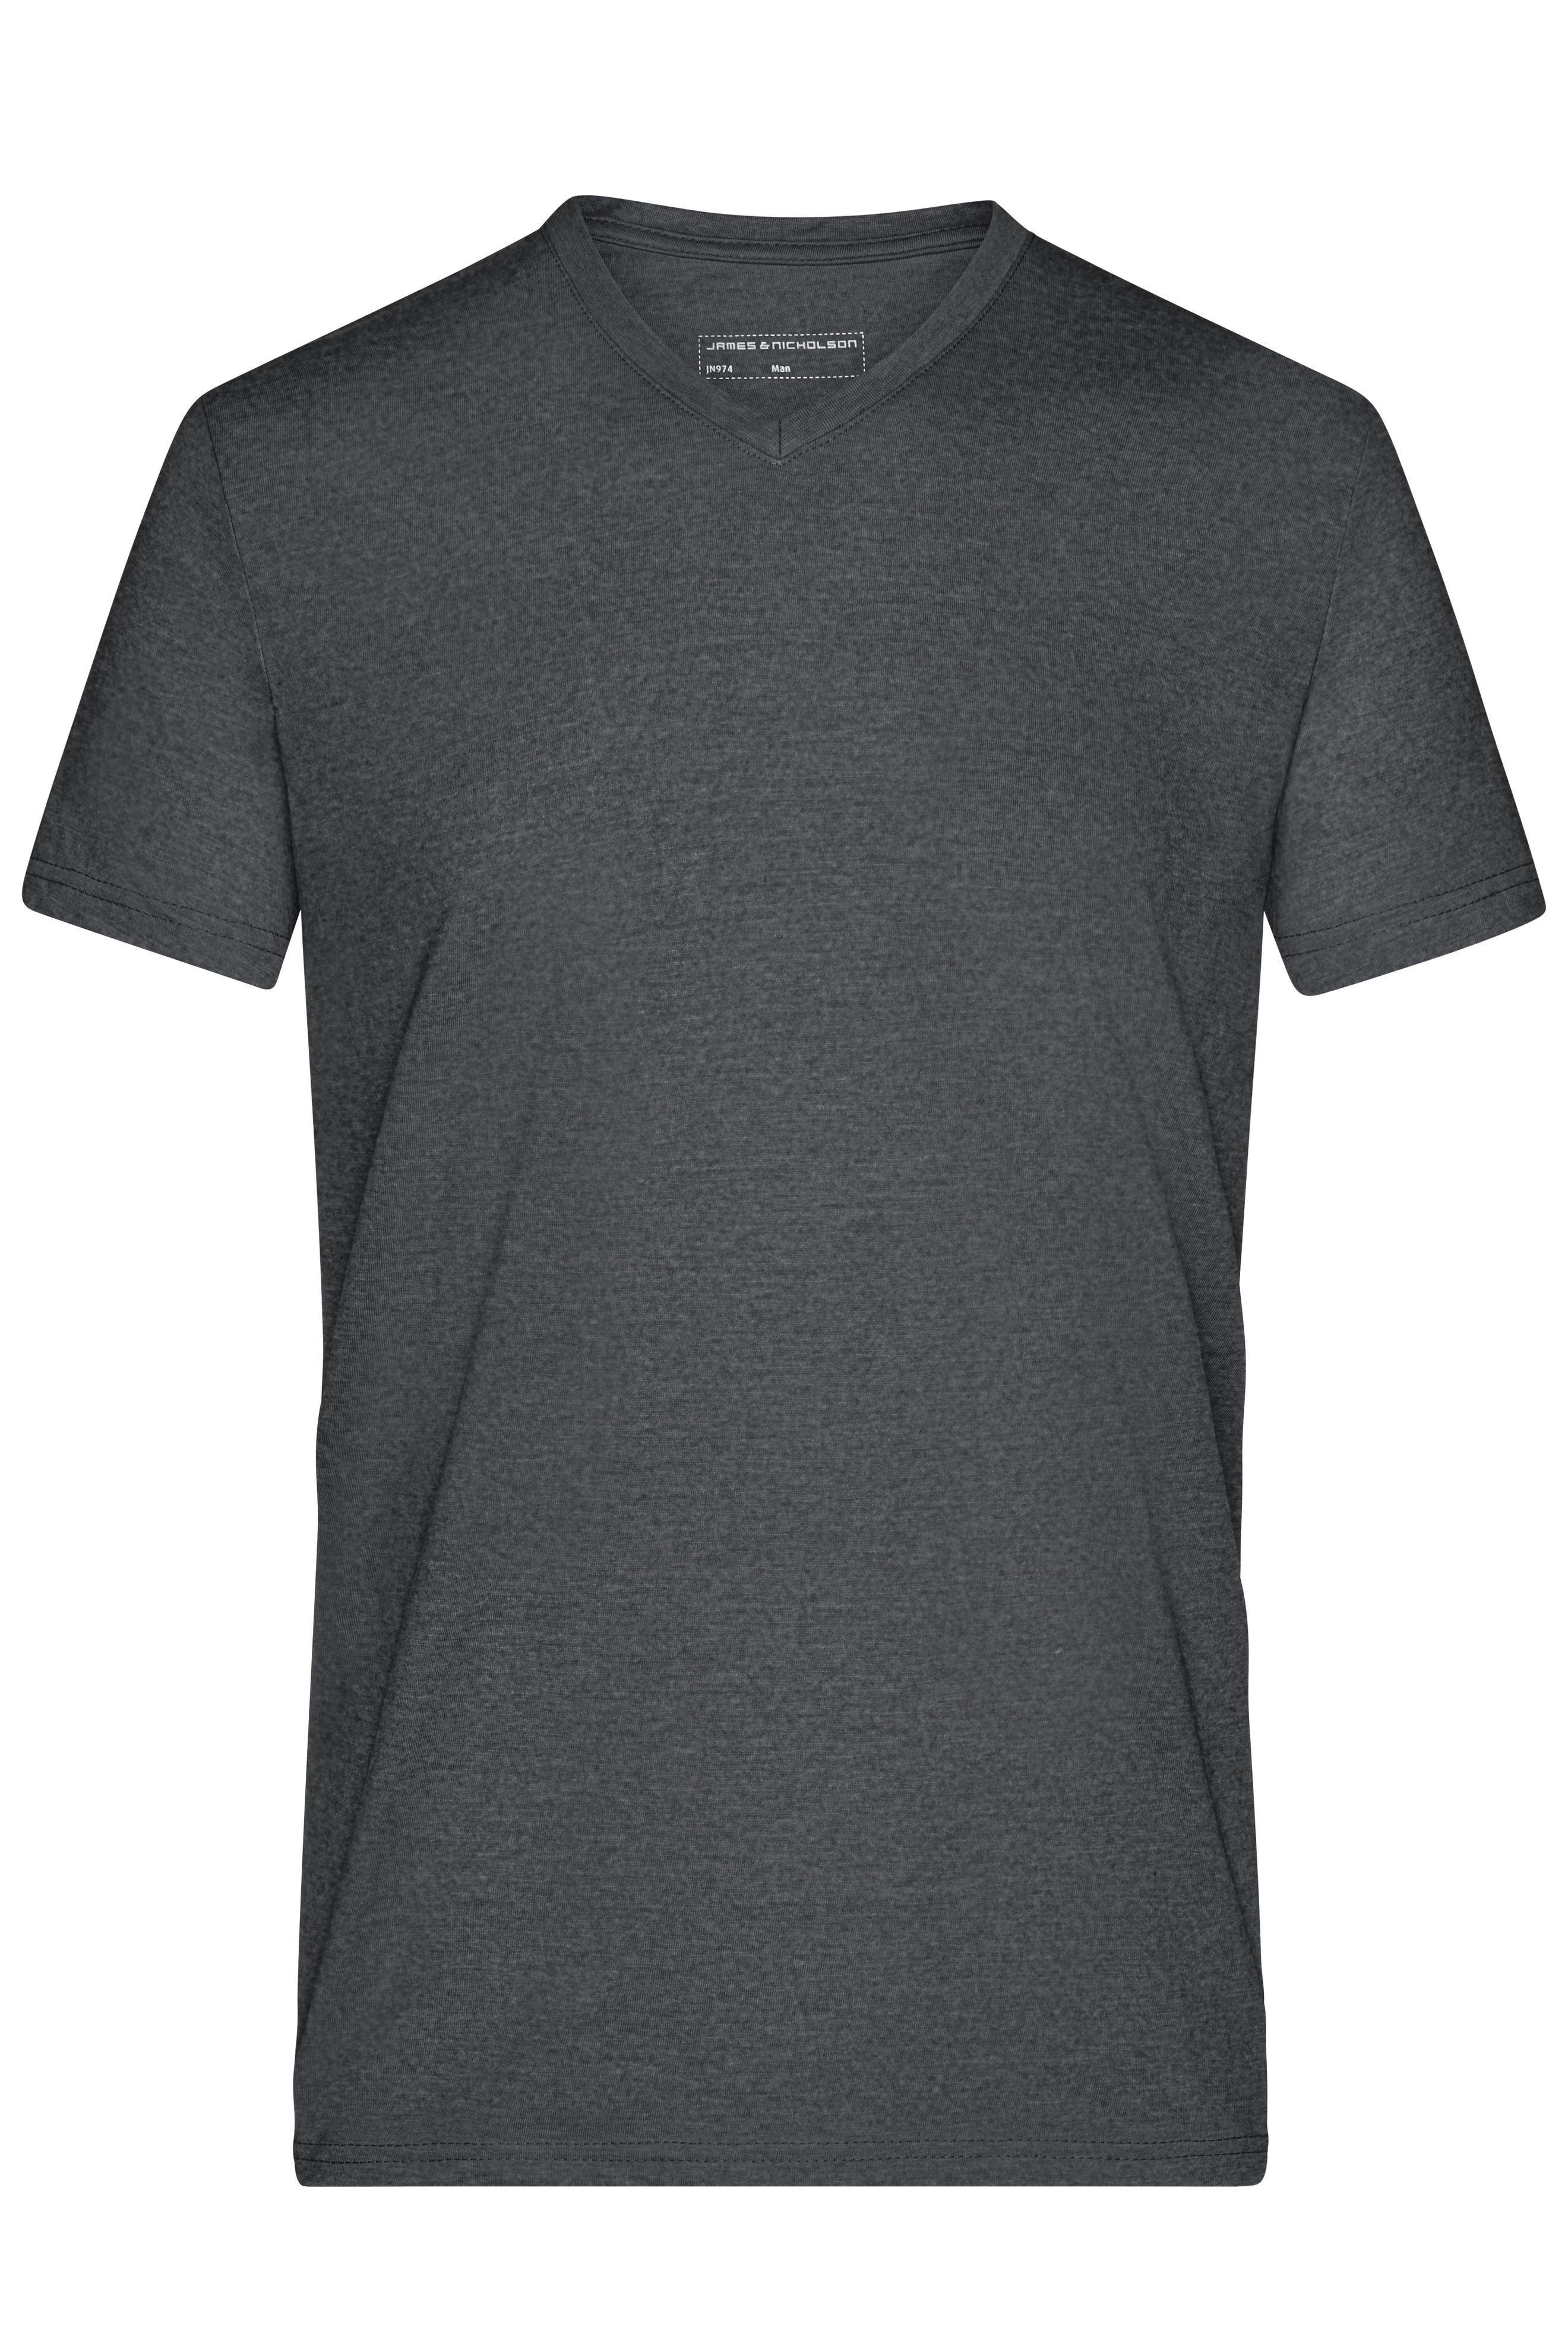 Men Men's Heather T-Shirt Black-melange-Daiber